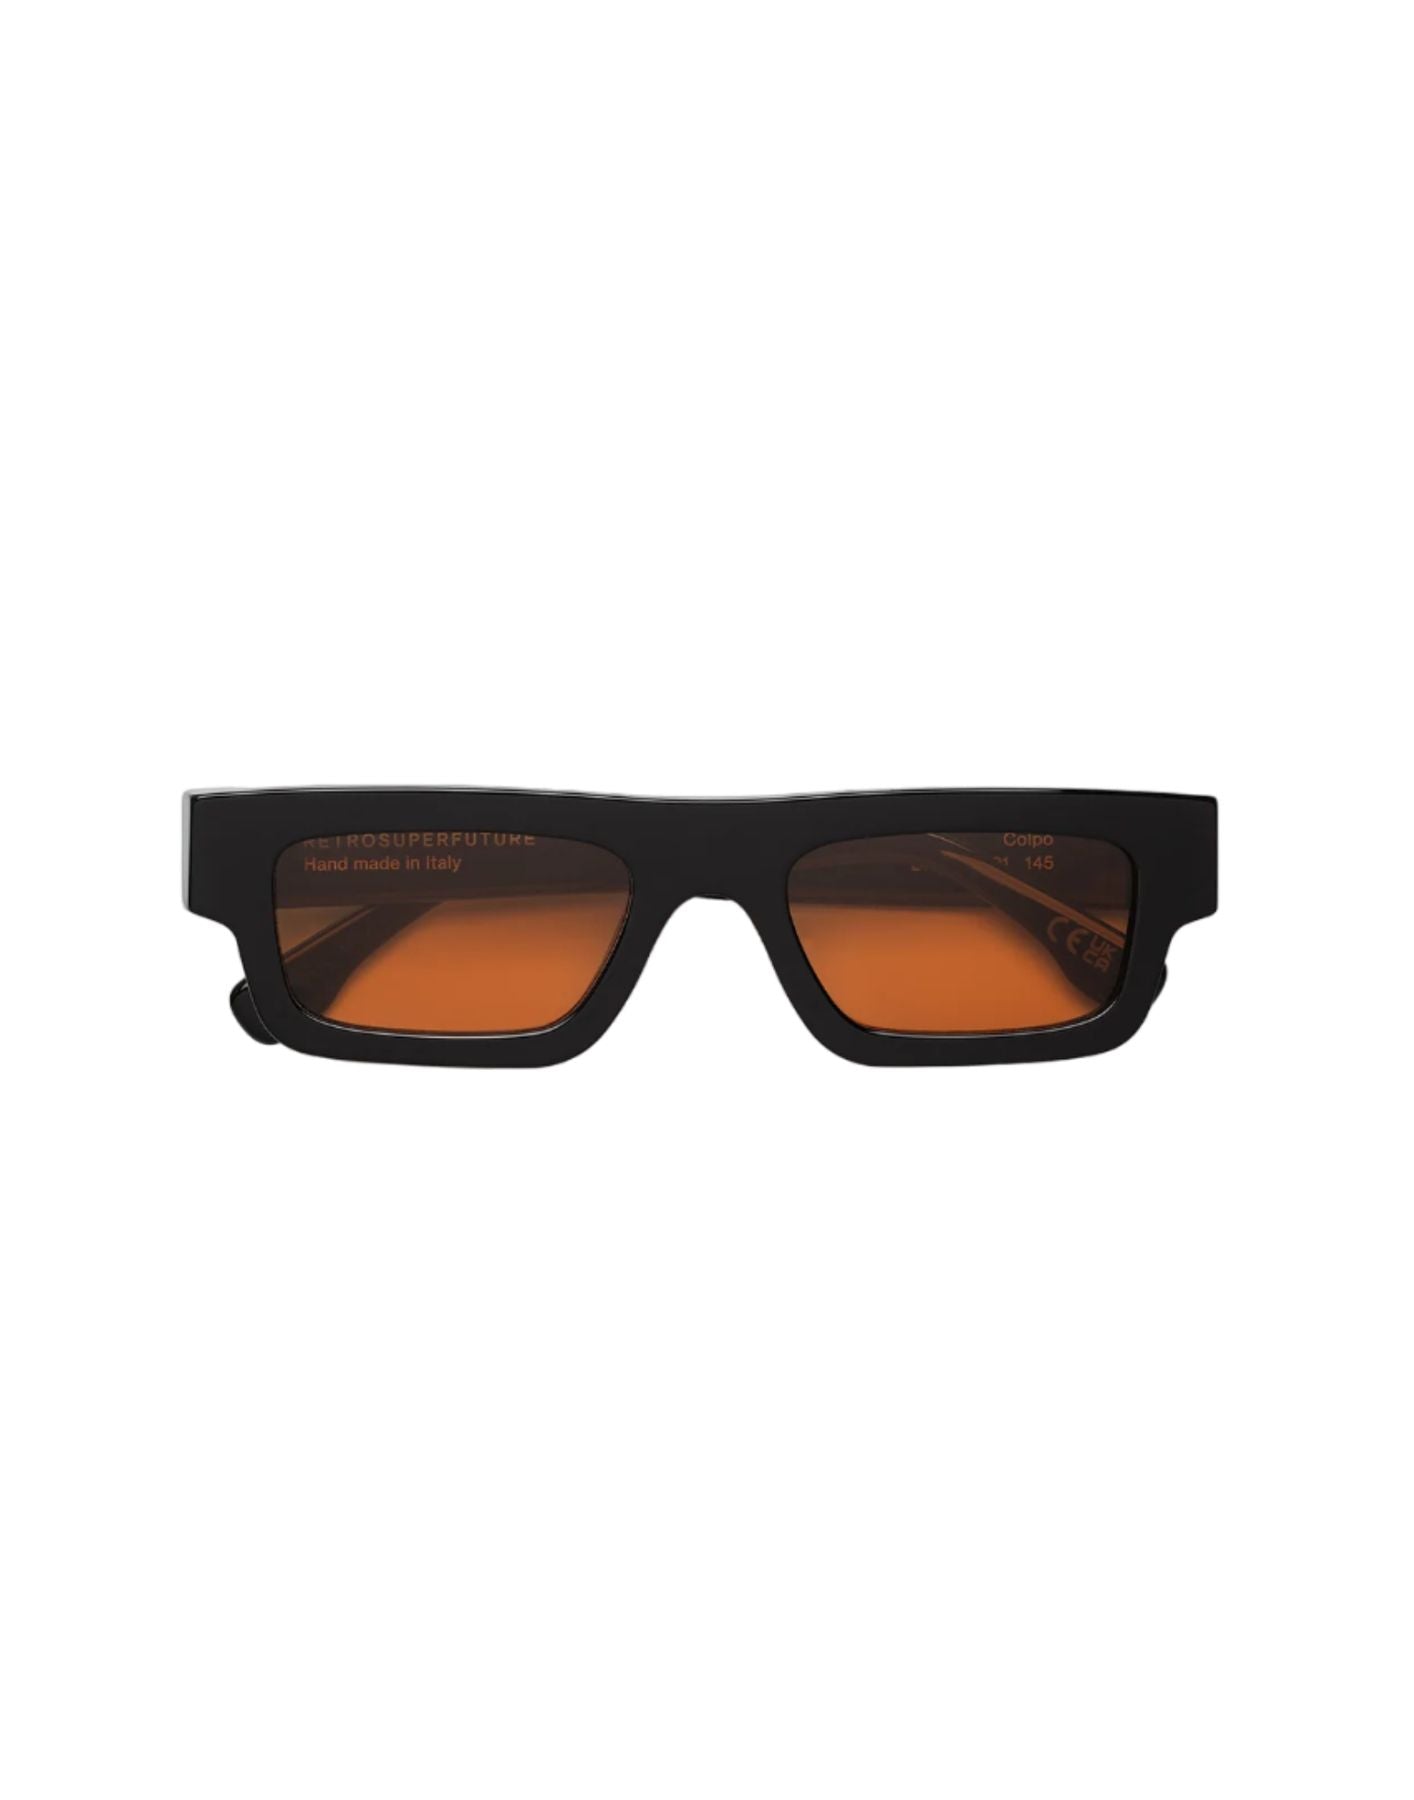 Sonnenbrille Unisex Colpo Fantome 061 RetroSuperFuture